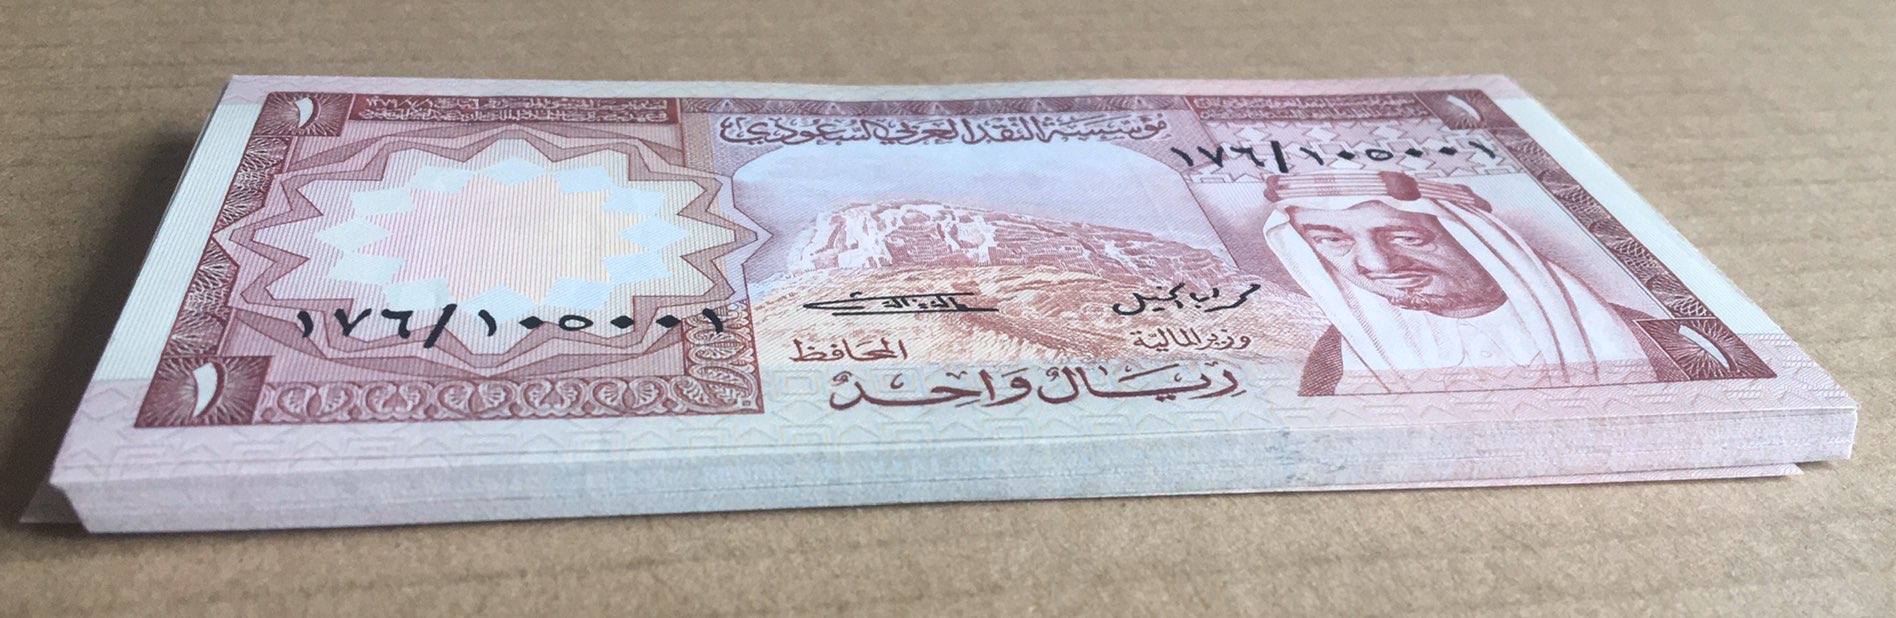 Lot 50 Banknotes 1977 Saudi Arabia 1 Riyal P-16 King Khalid Consecutive Numbers UNC